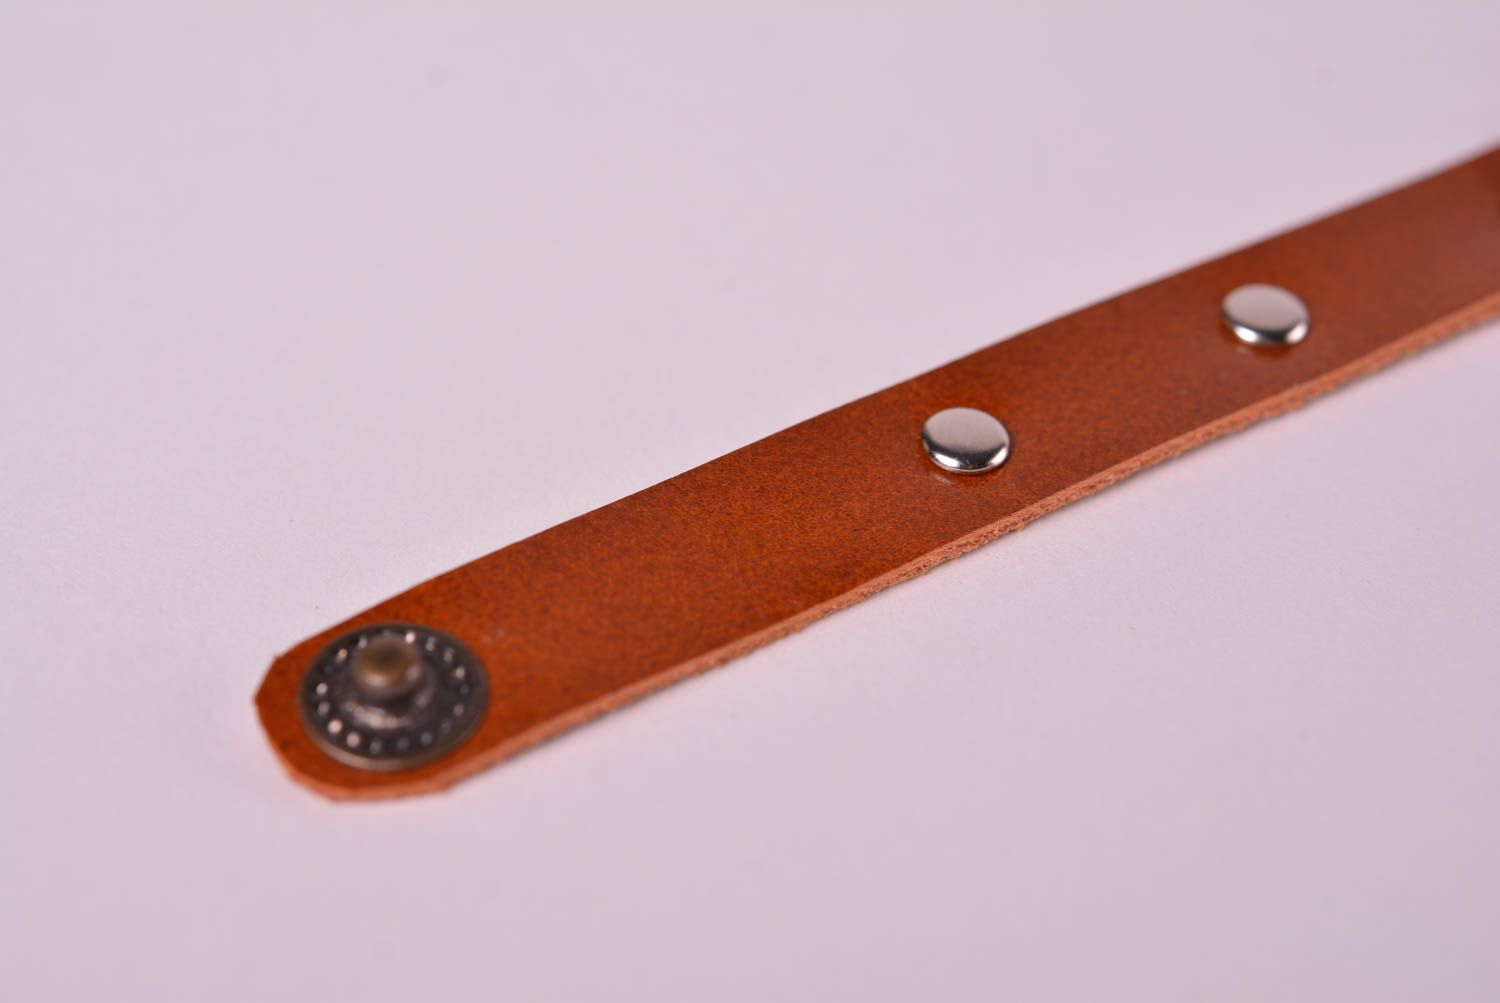 Кожаный браслет ручной работы коричневое украшение из кожи браслет на руку фото 3